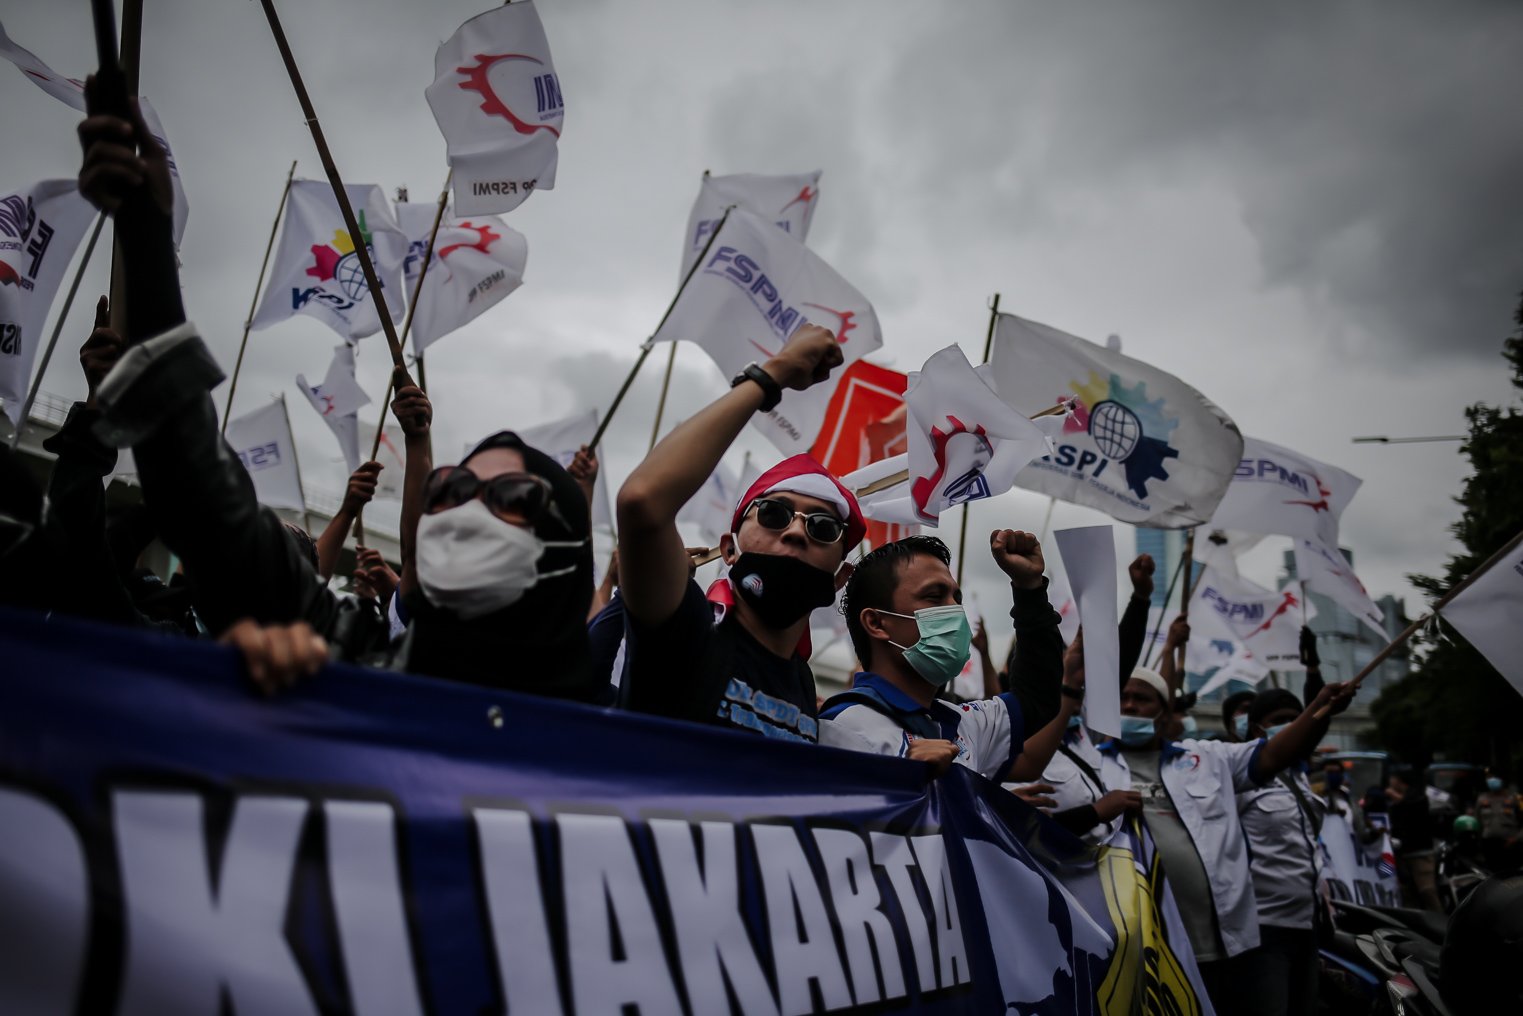 Sejumlah buruh dari berbagai serikat melakukan aksi unjuk rasa di depan Kantor Kementerian Ketenagakerjaan, Jakarta, Jumat (19/11/2021). Massa aksi menuntut Pemerintah untuk menaikan upah mininum sebesar 10 persen pada tahun 2022 dan segera mencabut Surat Edaran (SE) Menteri Ketenagakerjaan tentang penetapan upah minimum tahun 2022.